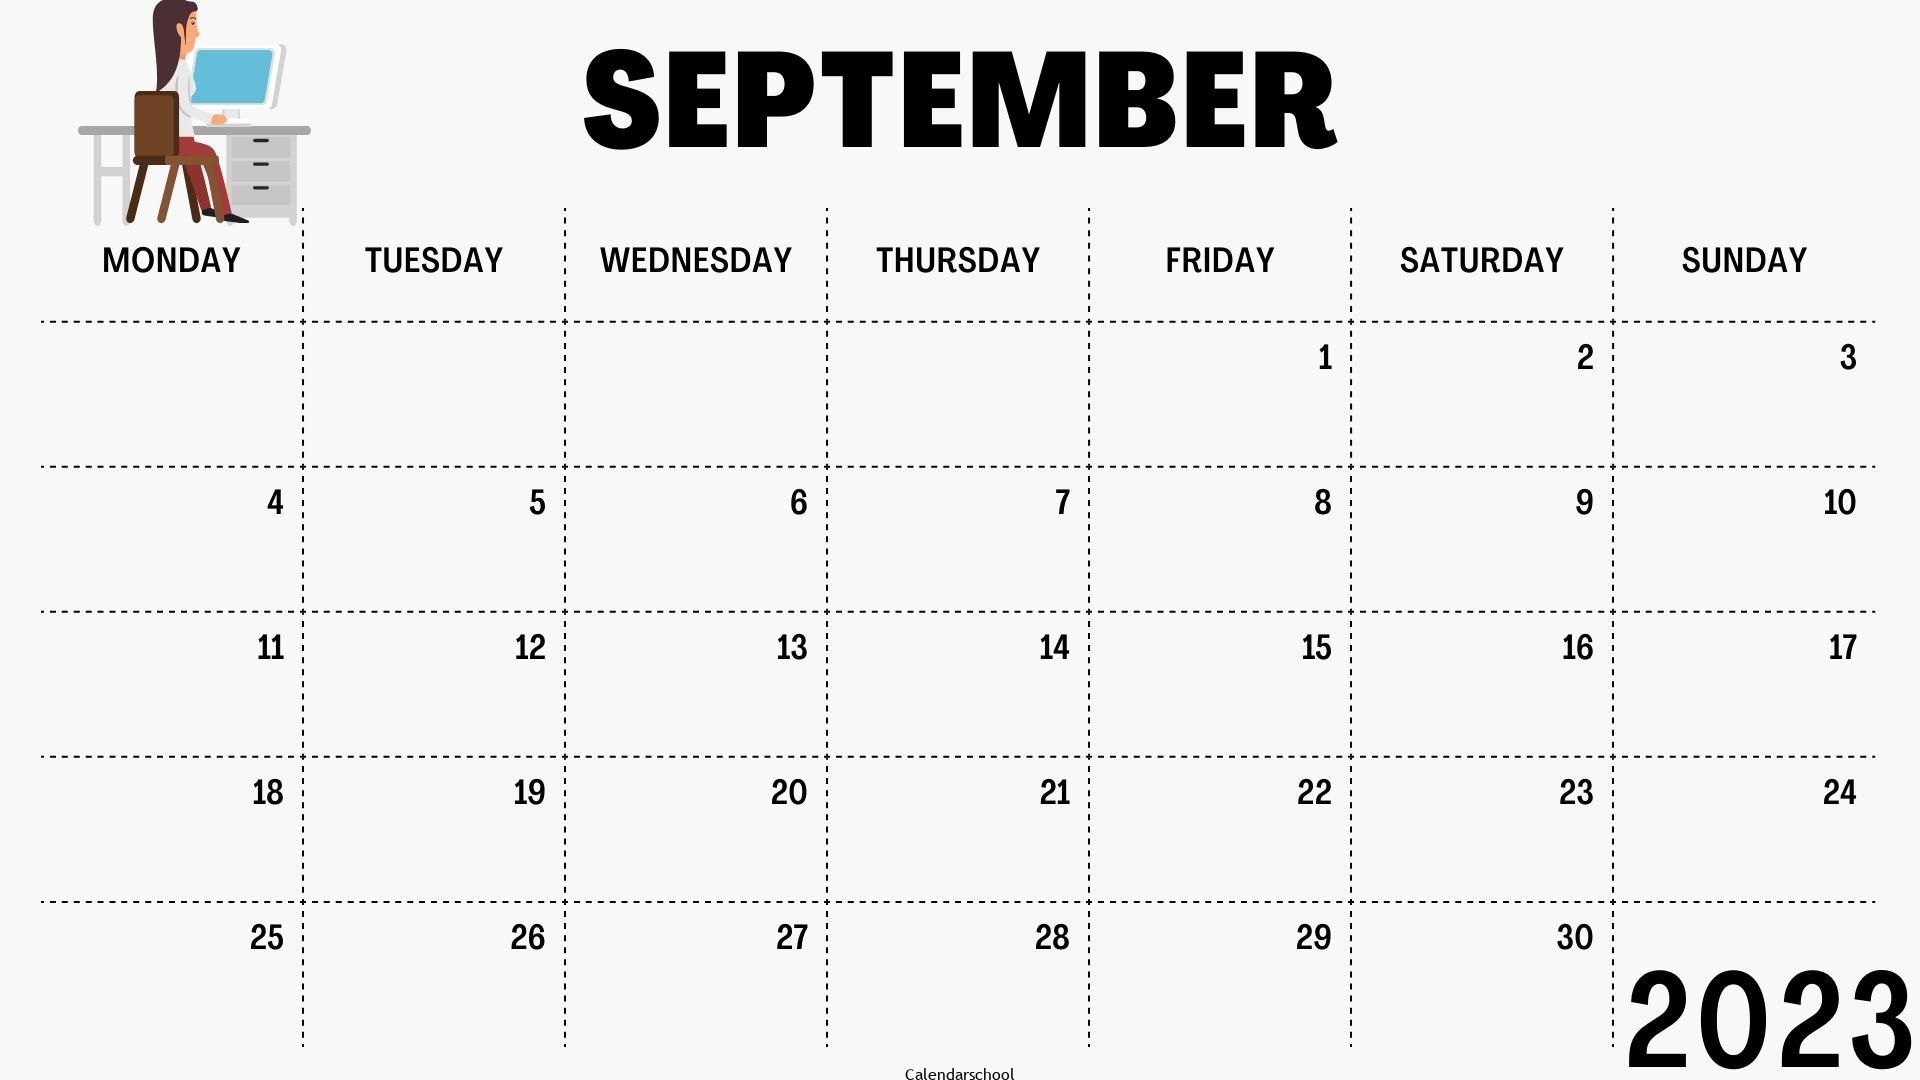 September 2023 Calendar Canada